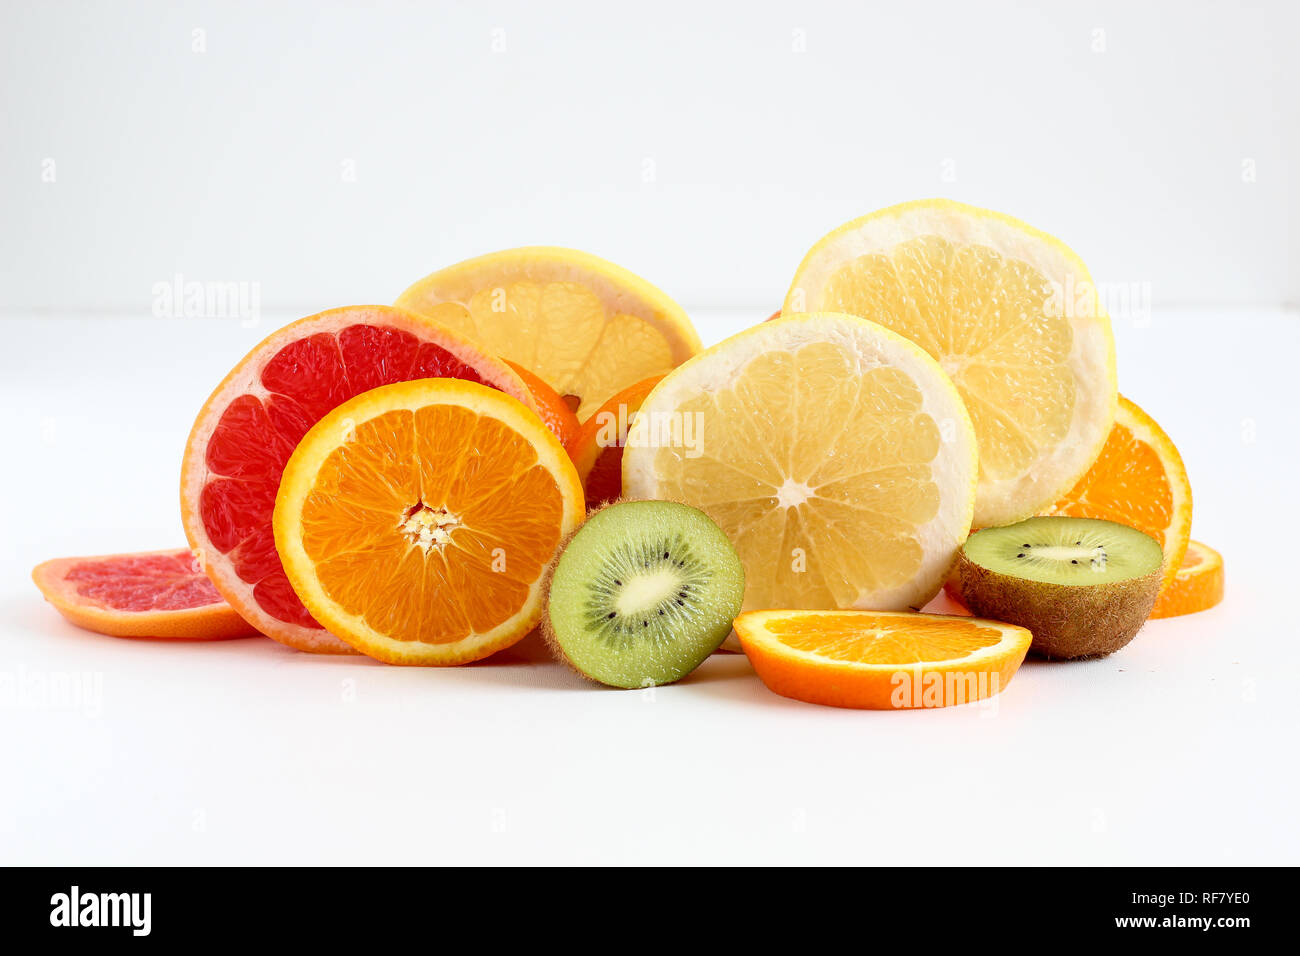 Layers of sliced fruits - kiwi, orange and grapefruits Stock Photo